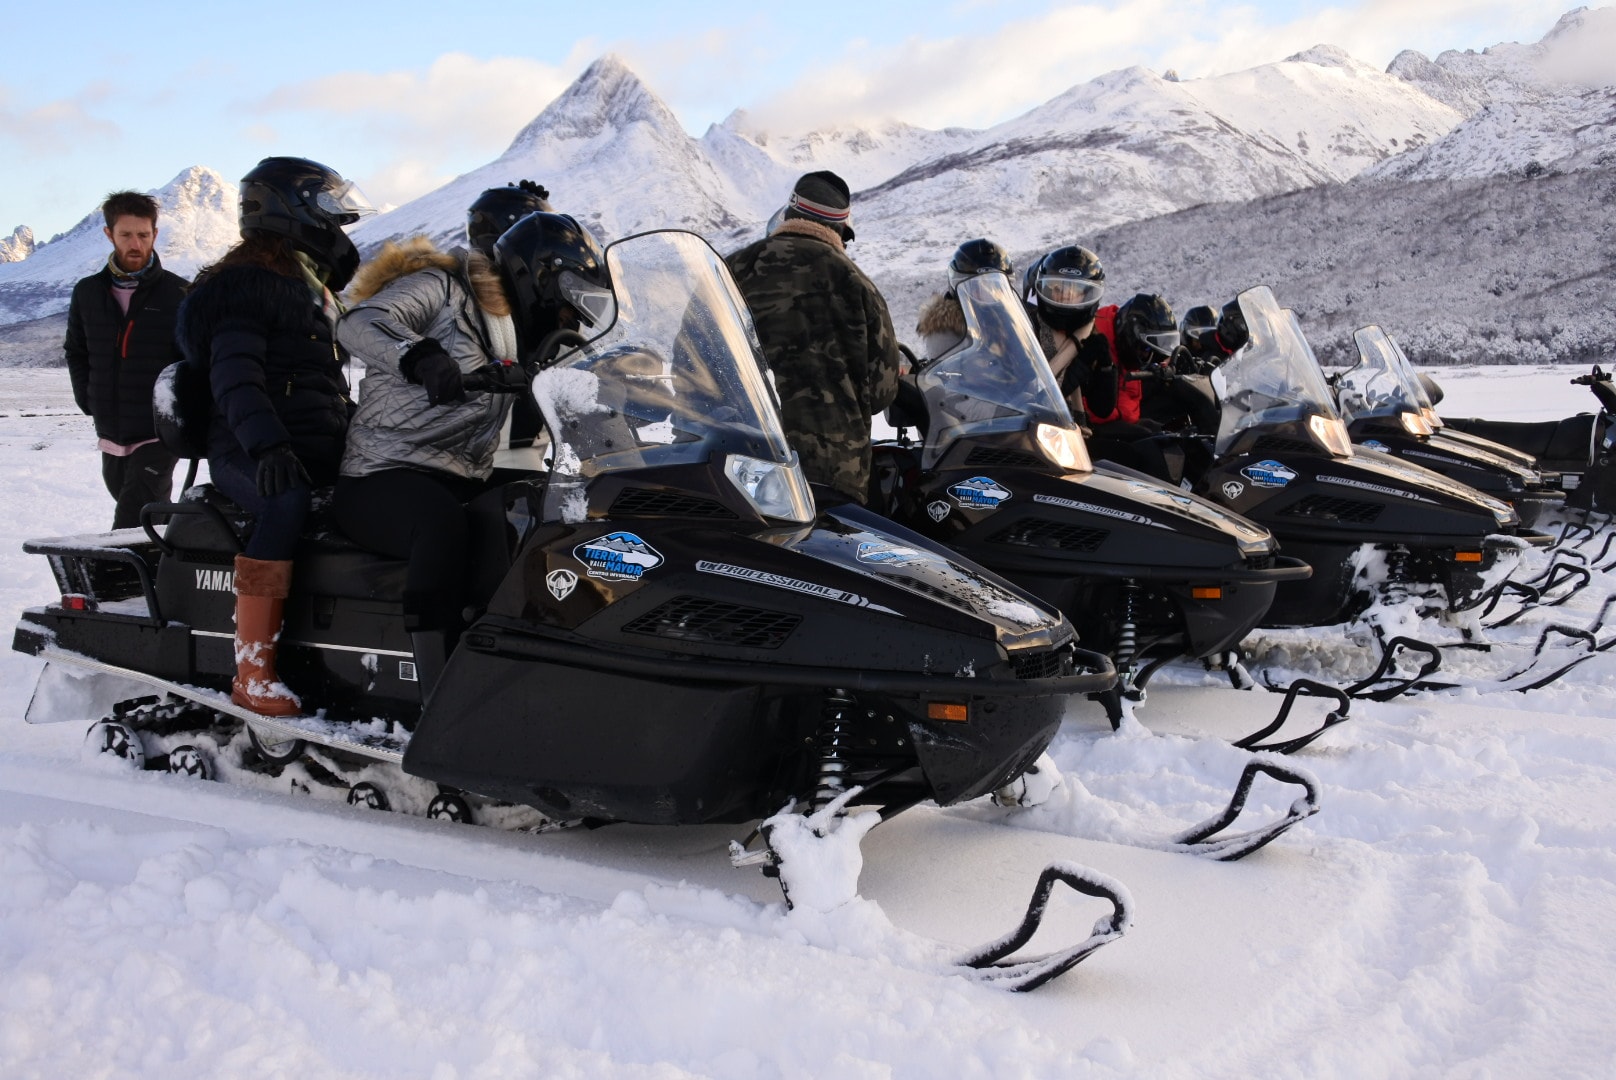 motos de nieve en cerro castor ushuaia